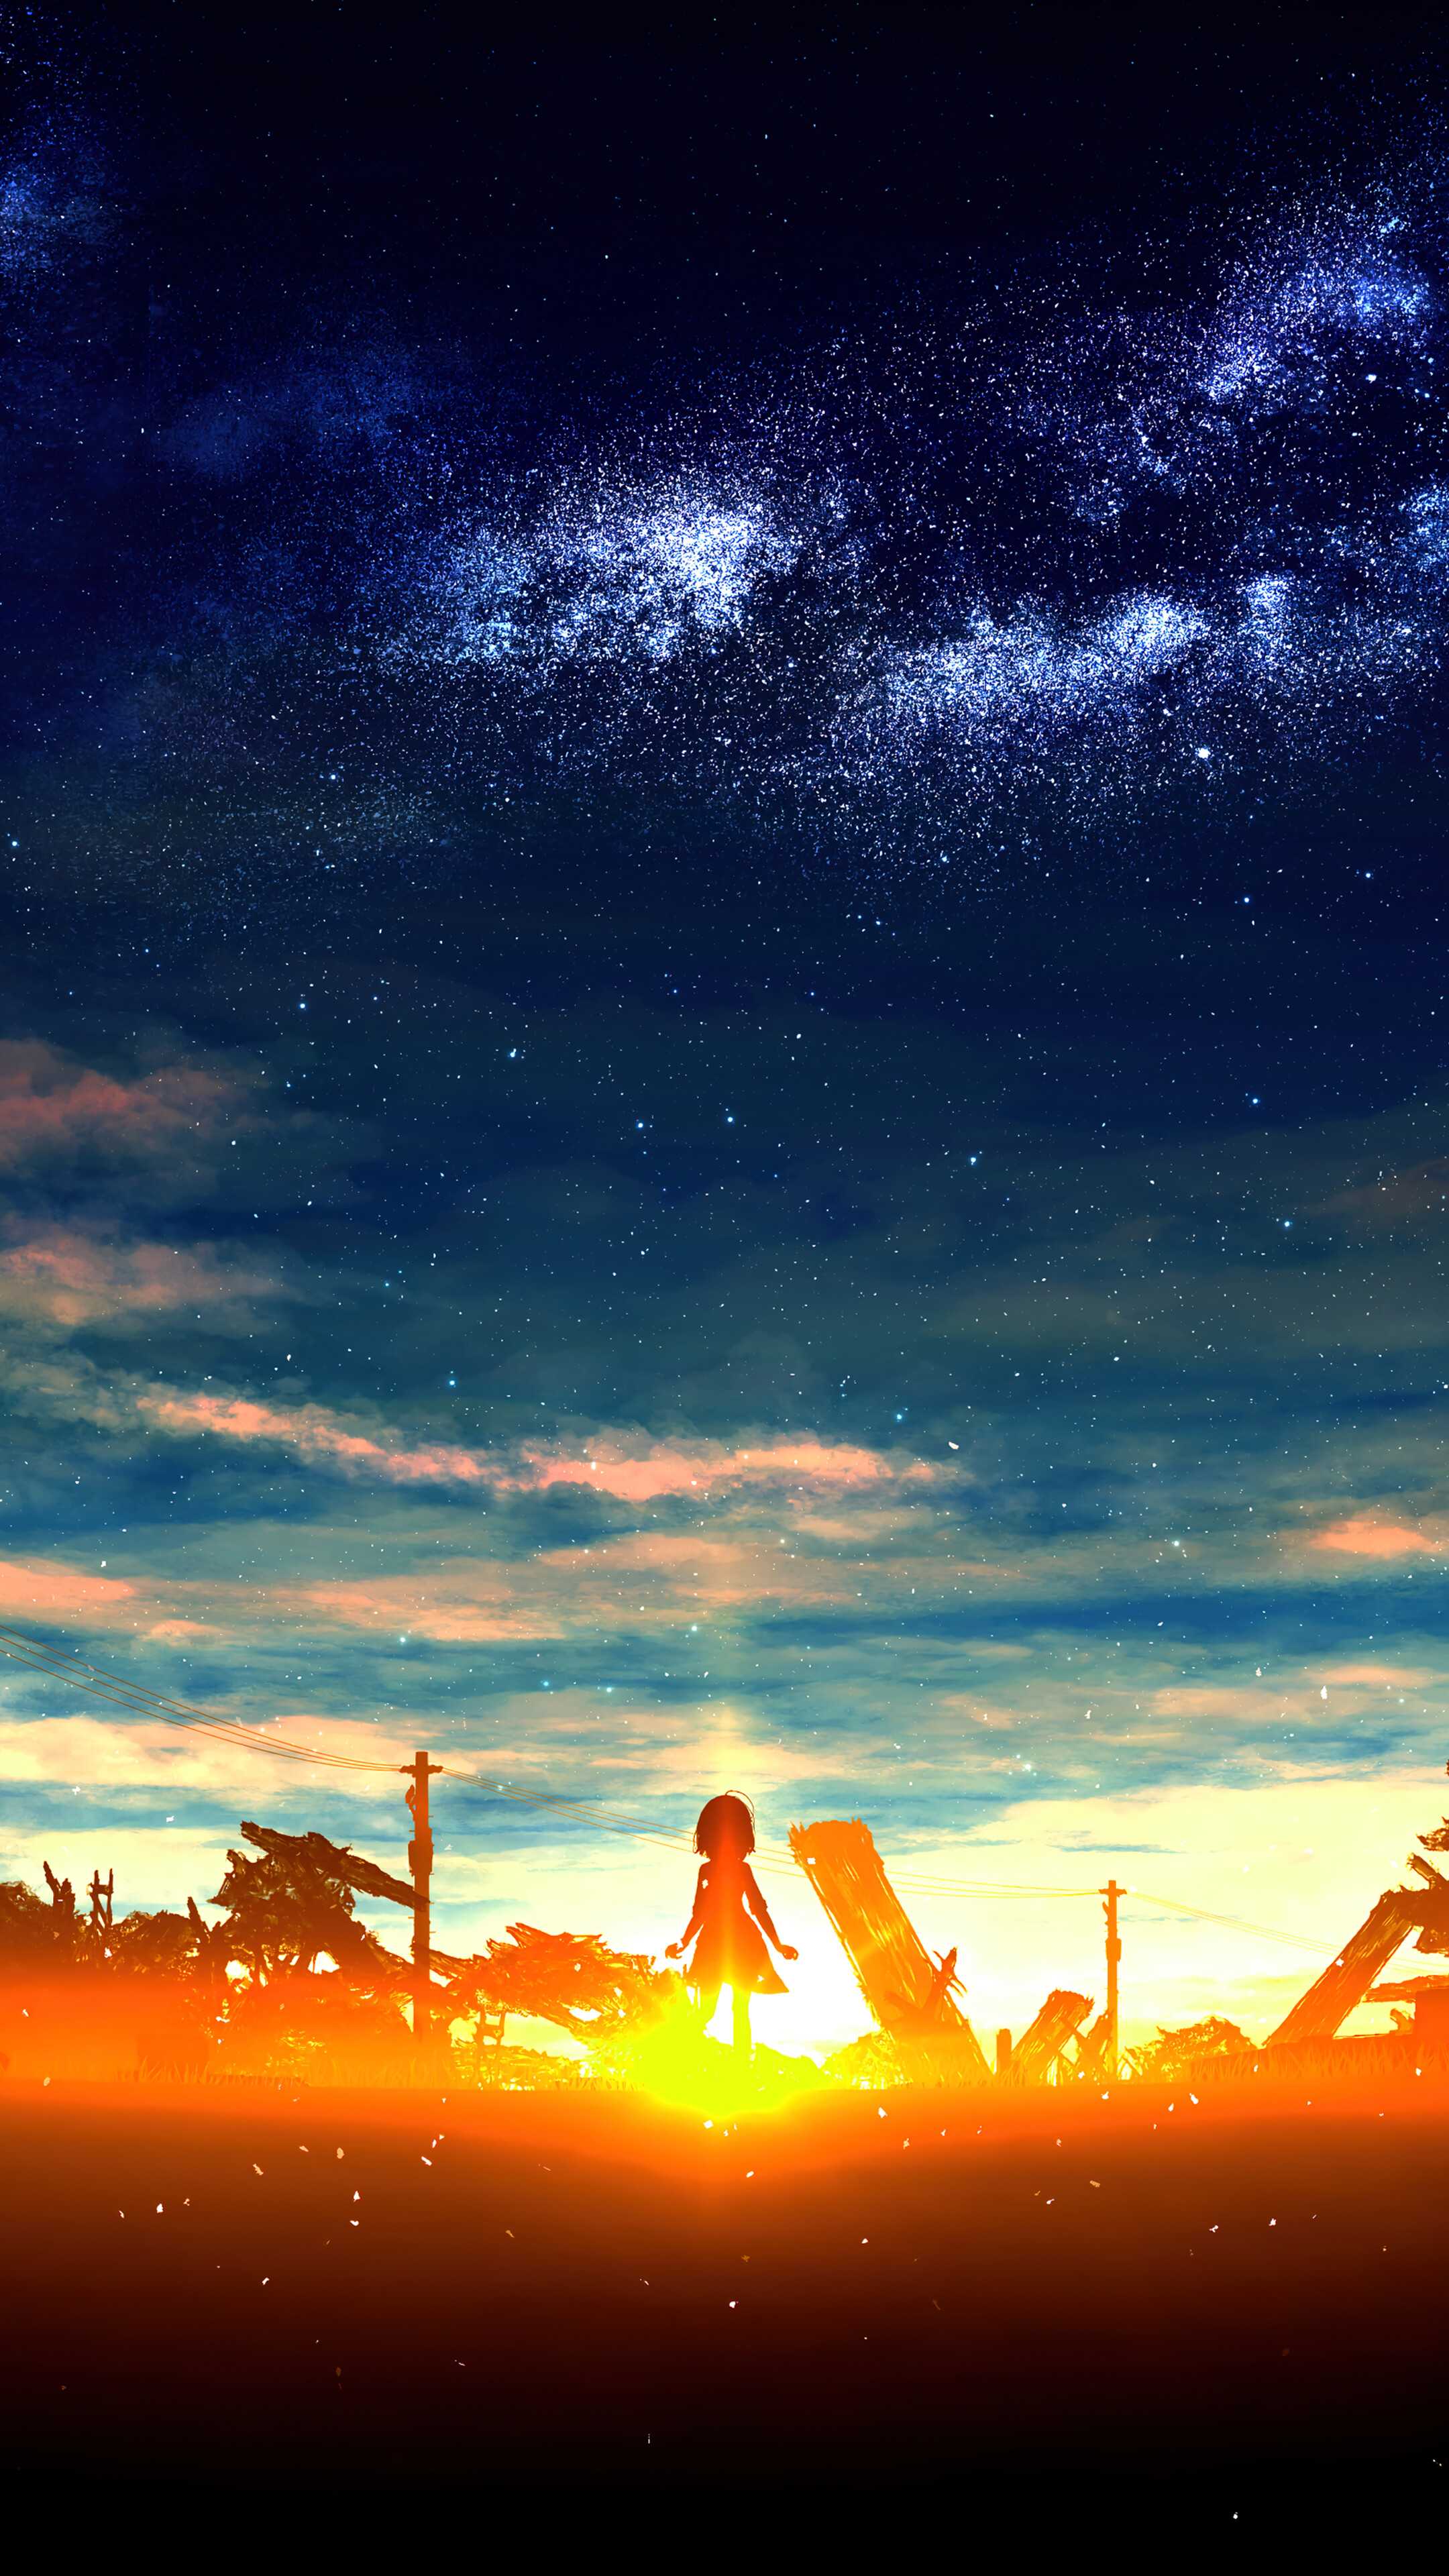 HD wallpaper: Hatsune Miku, anime, Vocaloid, blue, vertical | Wallpaper  Flare